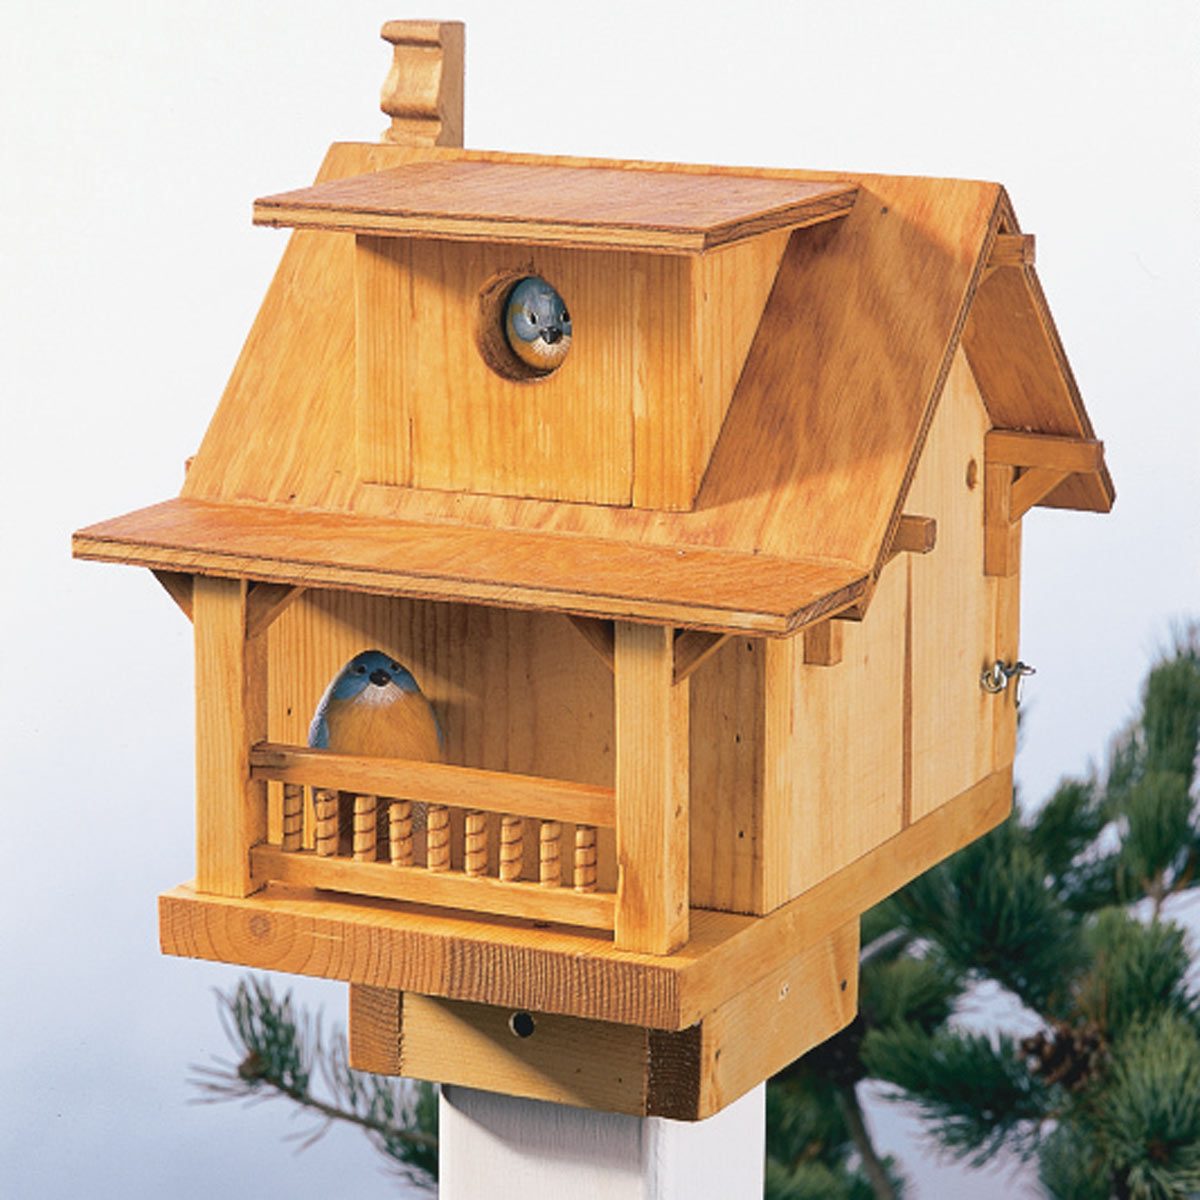 15 DIY Birdhouse Plans and Ideas